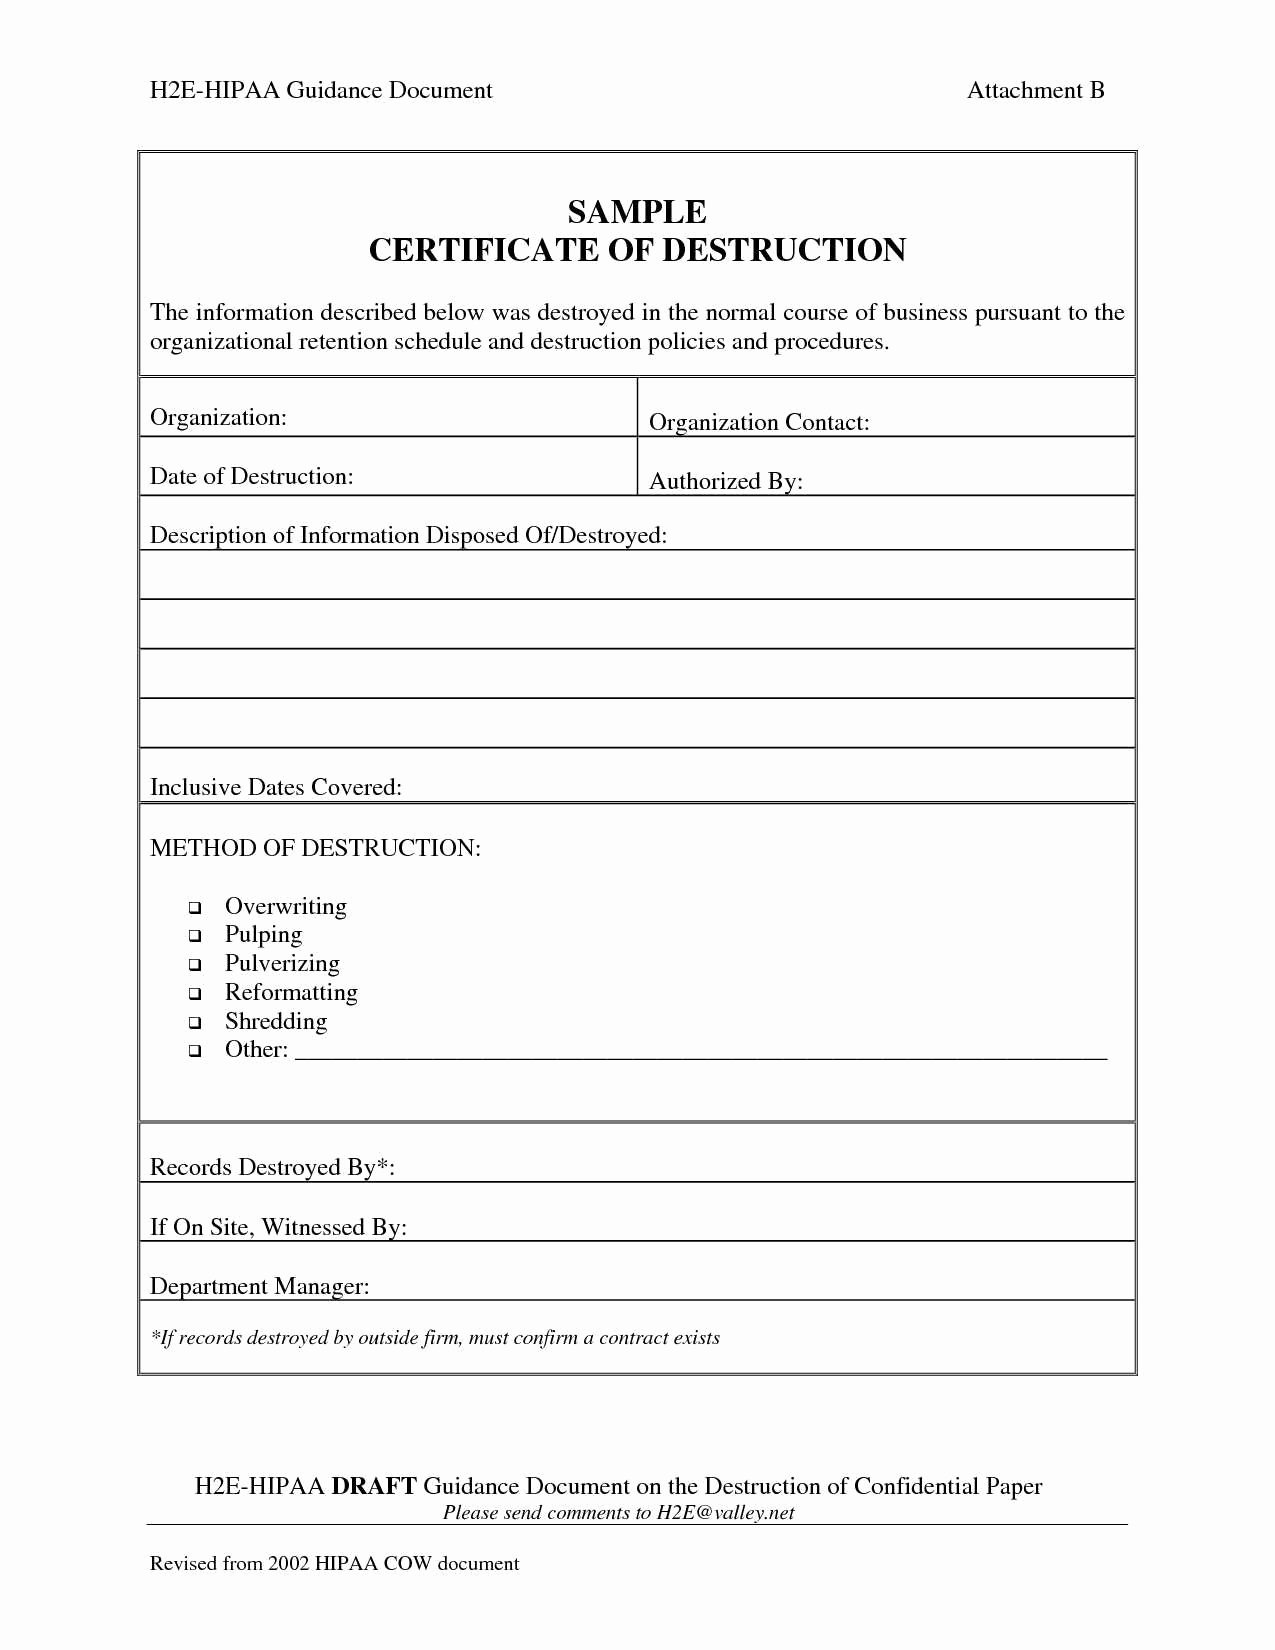 Certificate Of Destruction Template Beautiful Certificate Destruction Template Word Reeviewer